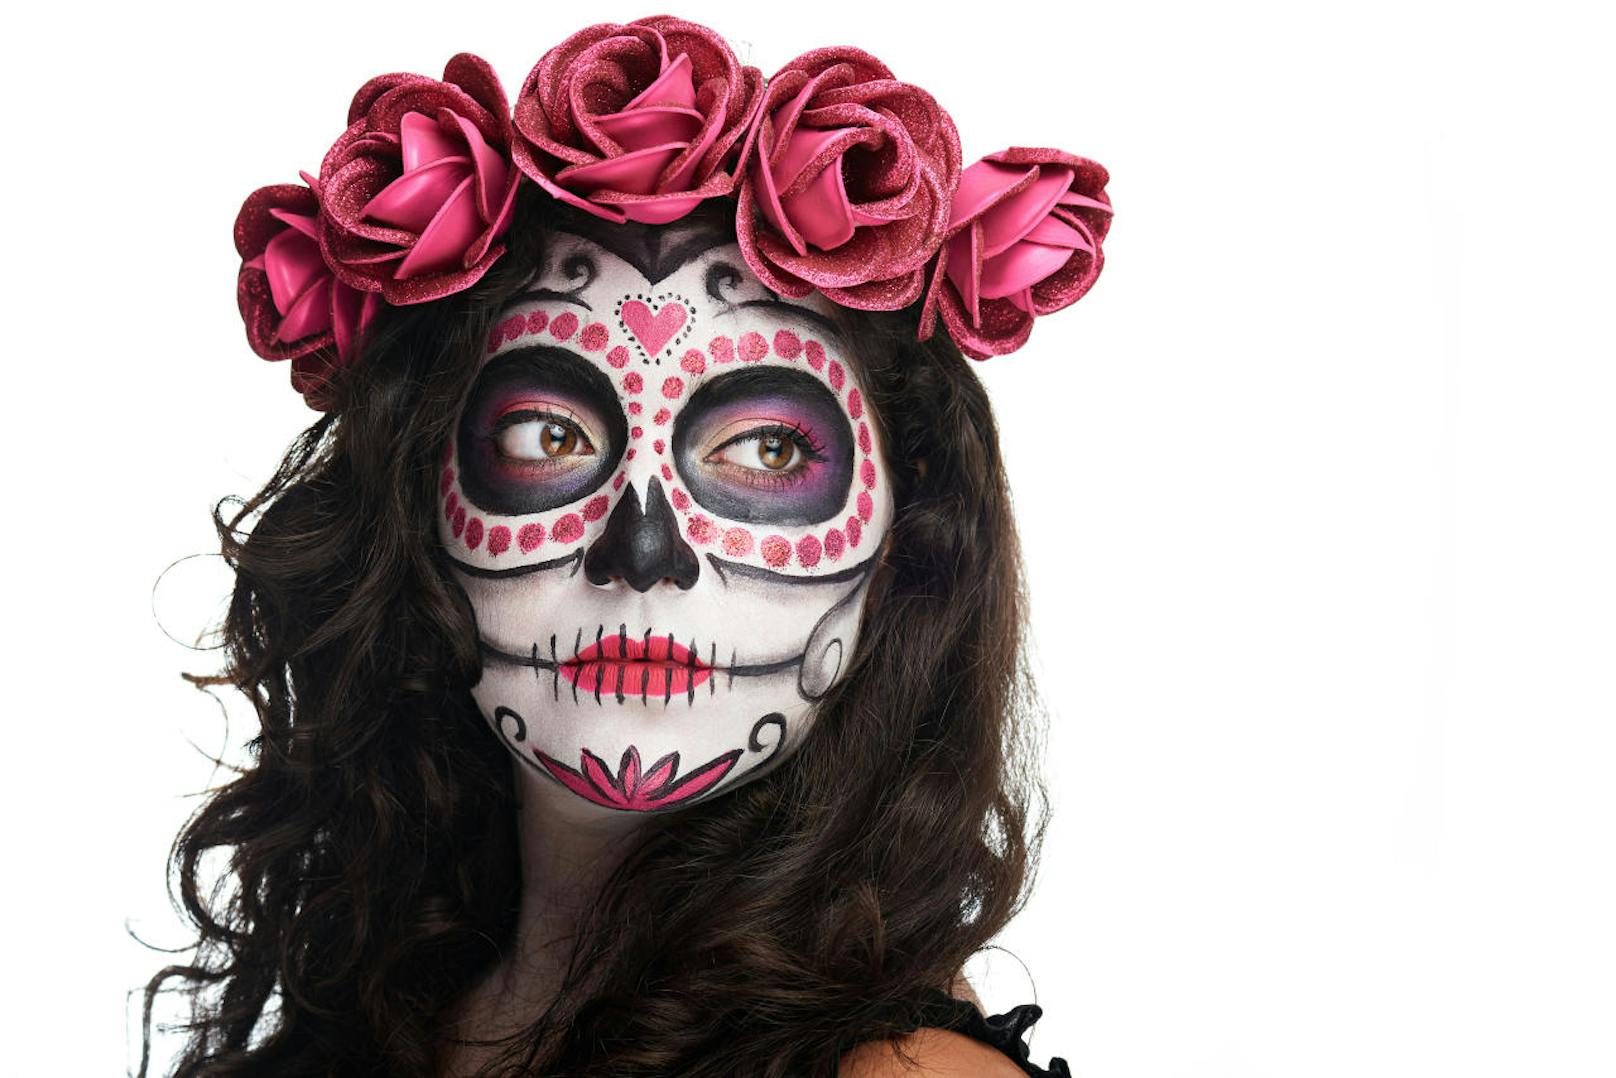 Ein Musik Festvial ist kein Halloween-Fest. Skull Make Up ist da eher fehl am Platz.